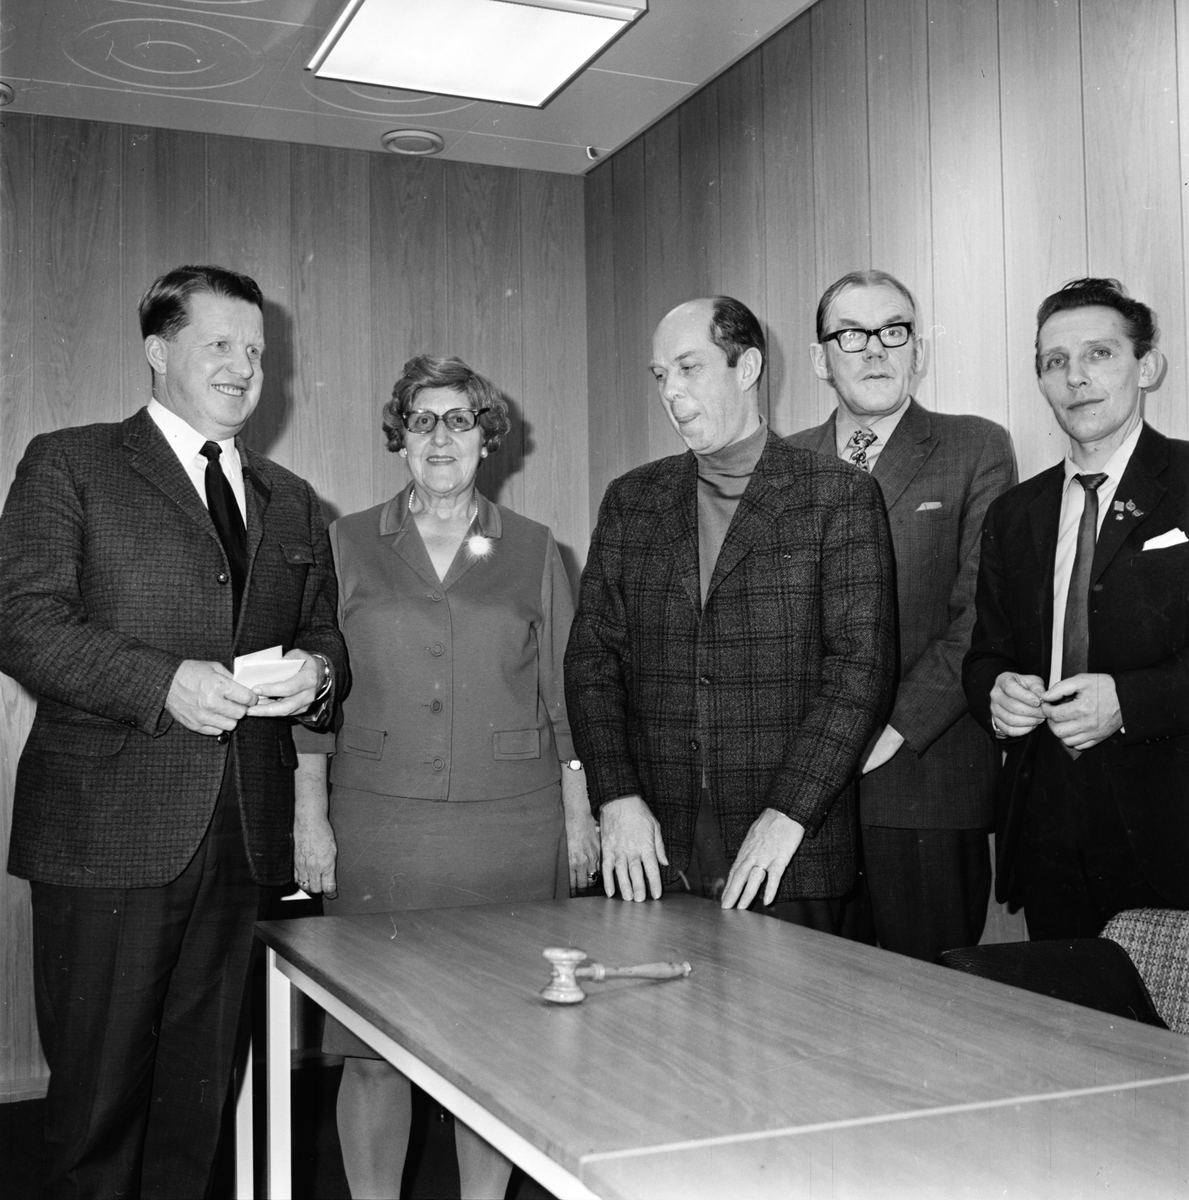 Arbrå. Diskussion om Forum.
November 1970